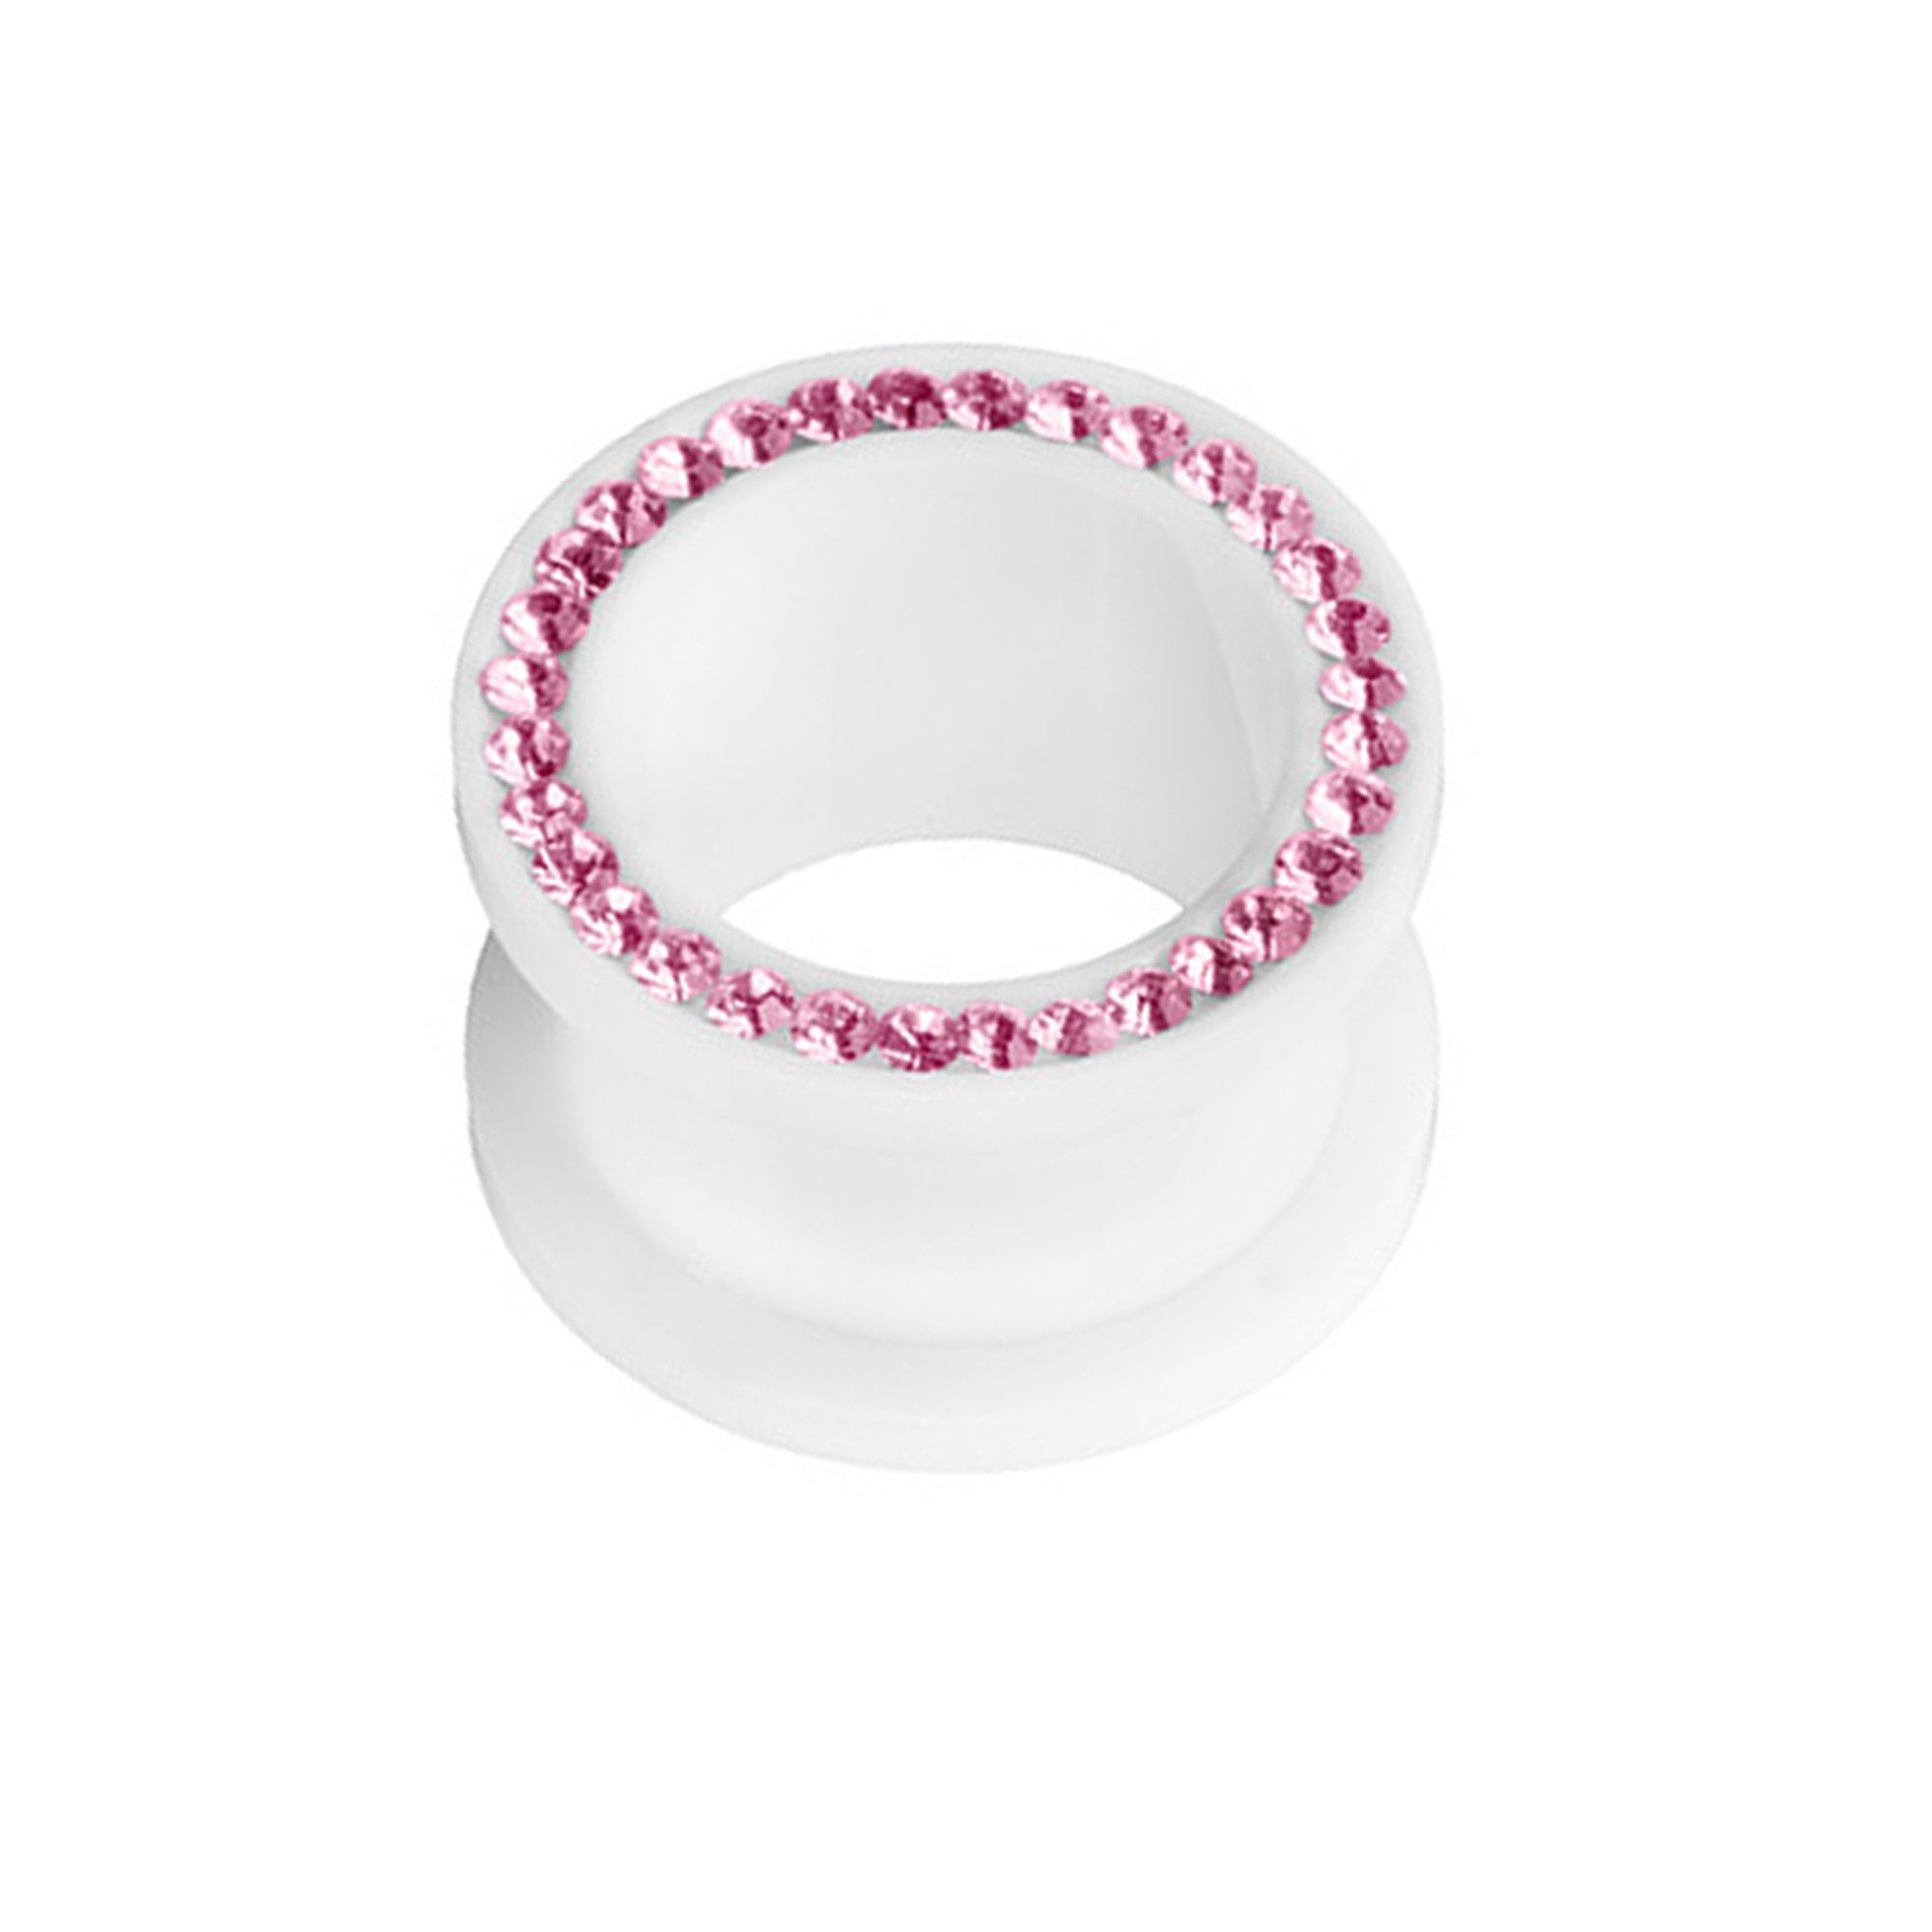 Taffstyle Plug Piercing Kristallen, Kristallen Schraub Plug Tunnel farbigen mit Kunststoff Piercing Flesh farbigen Pink Kunststoff Ohr